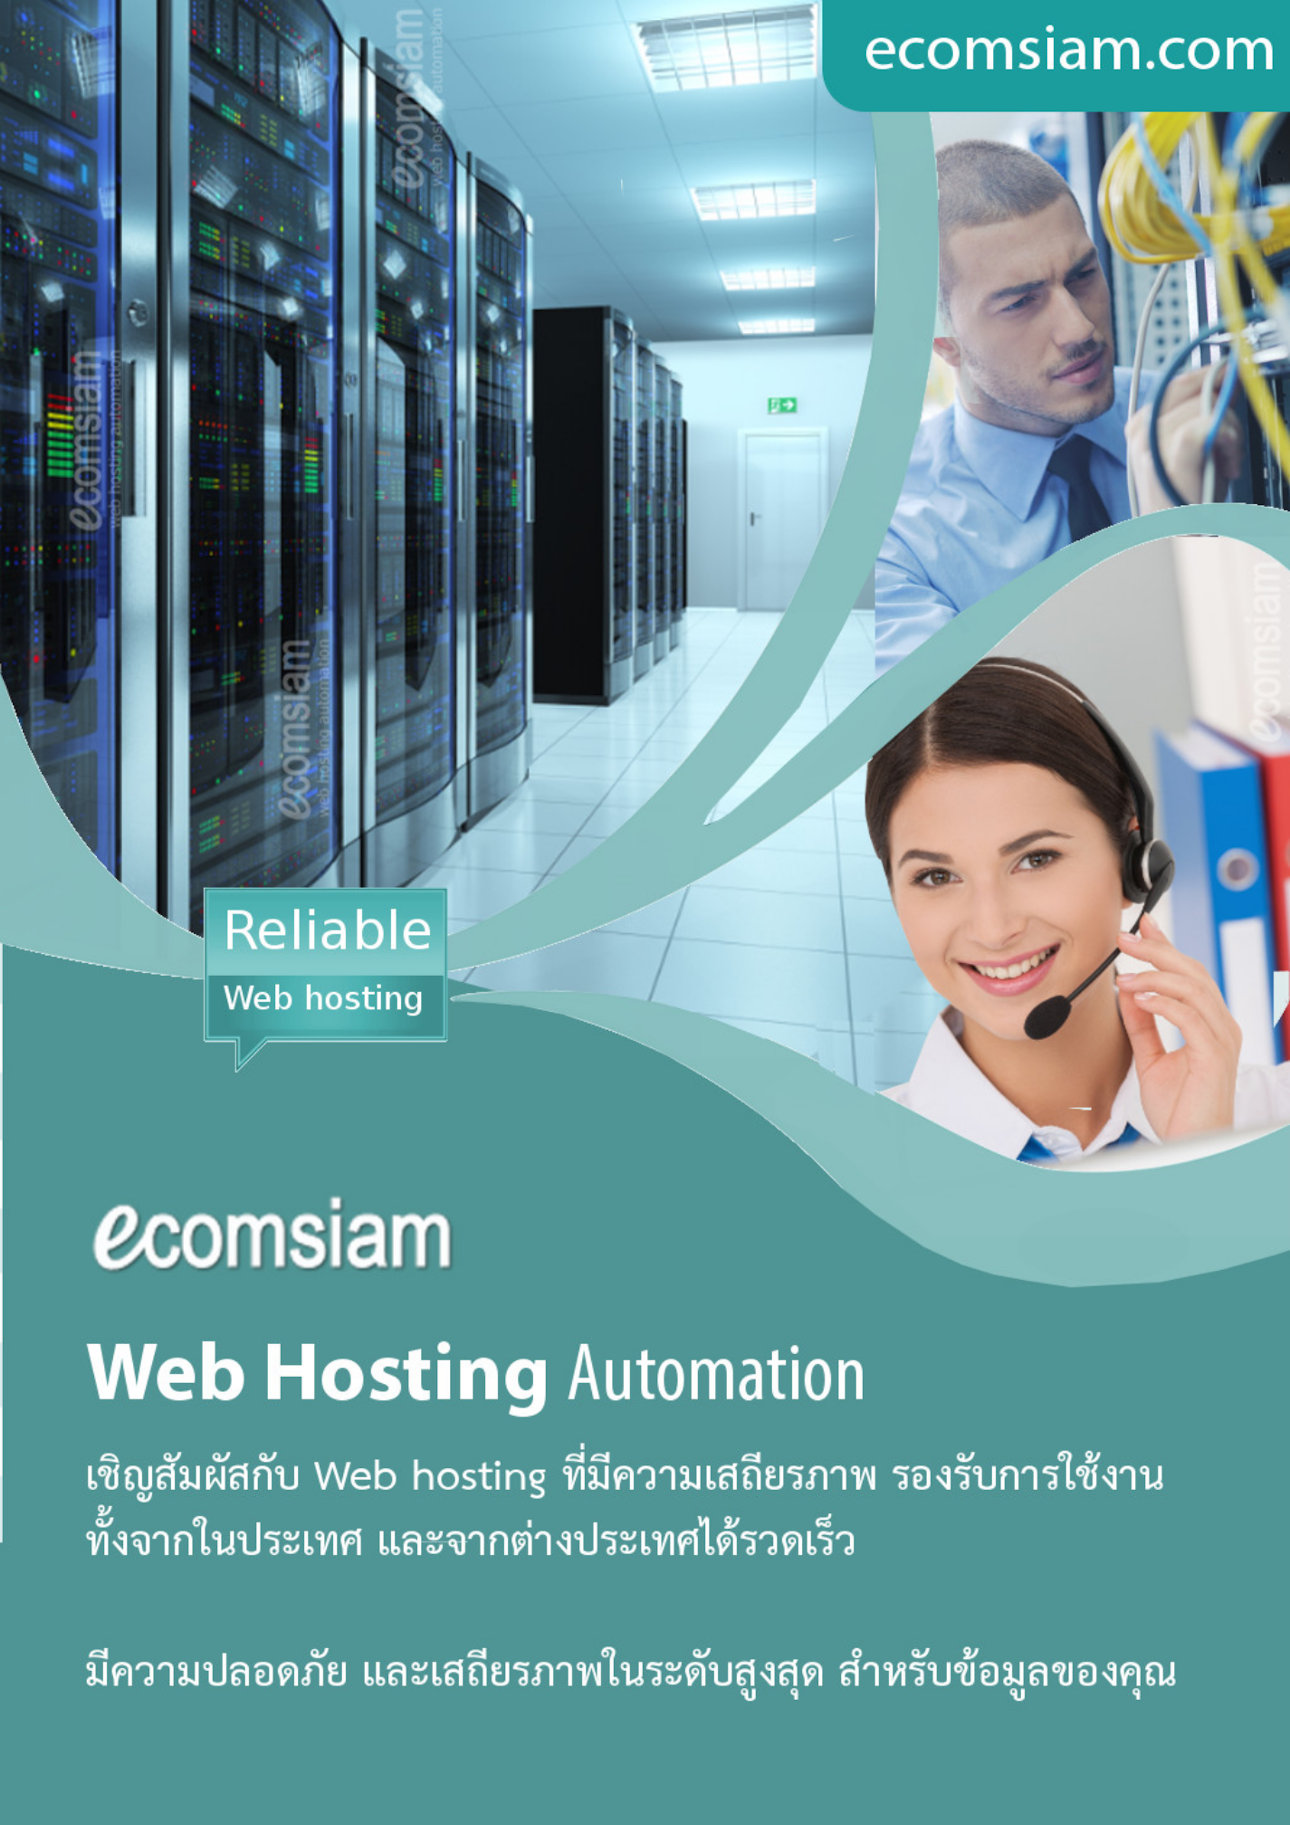 โบรชัวรบริการ  Web Hosting thai คุณภาพ บริการดี พื้นที่มาก  คุณภาพสูง  hosting ฟรีโดเมน ฟรี SSL ระบบควบคุมจัดการ Web hosting ไทย ที่ง่าย สะดวก และปลอดภัย อีเมลและเว็บไซต์สำหรับธุรกิจของคุณ มีระบบเก็บ log file ตามกฏหมาย มีความปลอดภัยในการใช้งาน พร้อมมีระบบสำรองข้อมูลรายวัน (daily backup) และ สำรองข้อมูลรายสัปดาห์ (weekly backup) ระบบป้องกันไวรัสจากอีเมล์ (virus protection) พร้อมระบบกรองสแปมส์เมล์หรือกรองอีเมล์ขยะ (Spammail filter) เริ่มต้นเพียง 2,200 บาทต่อปี  โทร.หาเราตอนนี้เลย  02-9682665   บริการลูกค้าดี ดูแลดี  แนะนำเว็บโฮสติ้ง โดย thailandwebhost.com